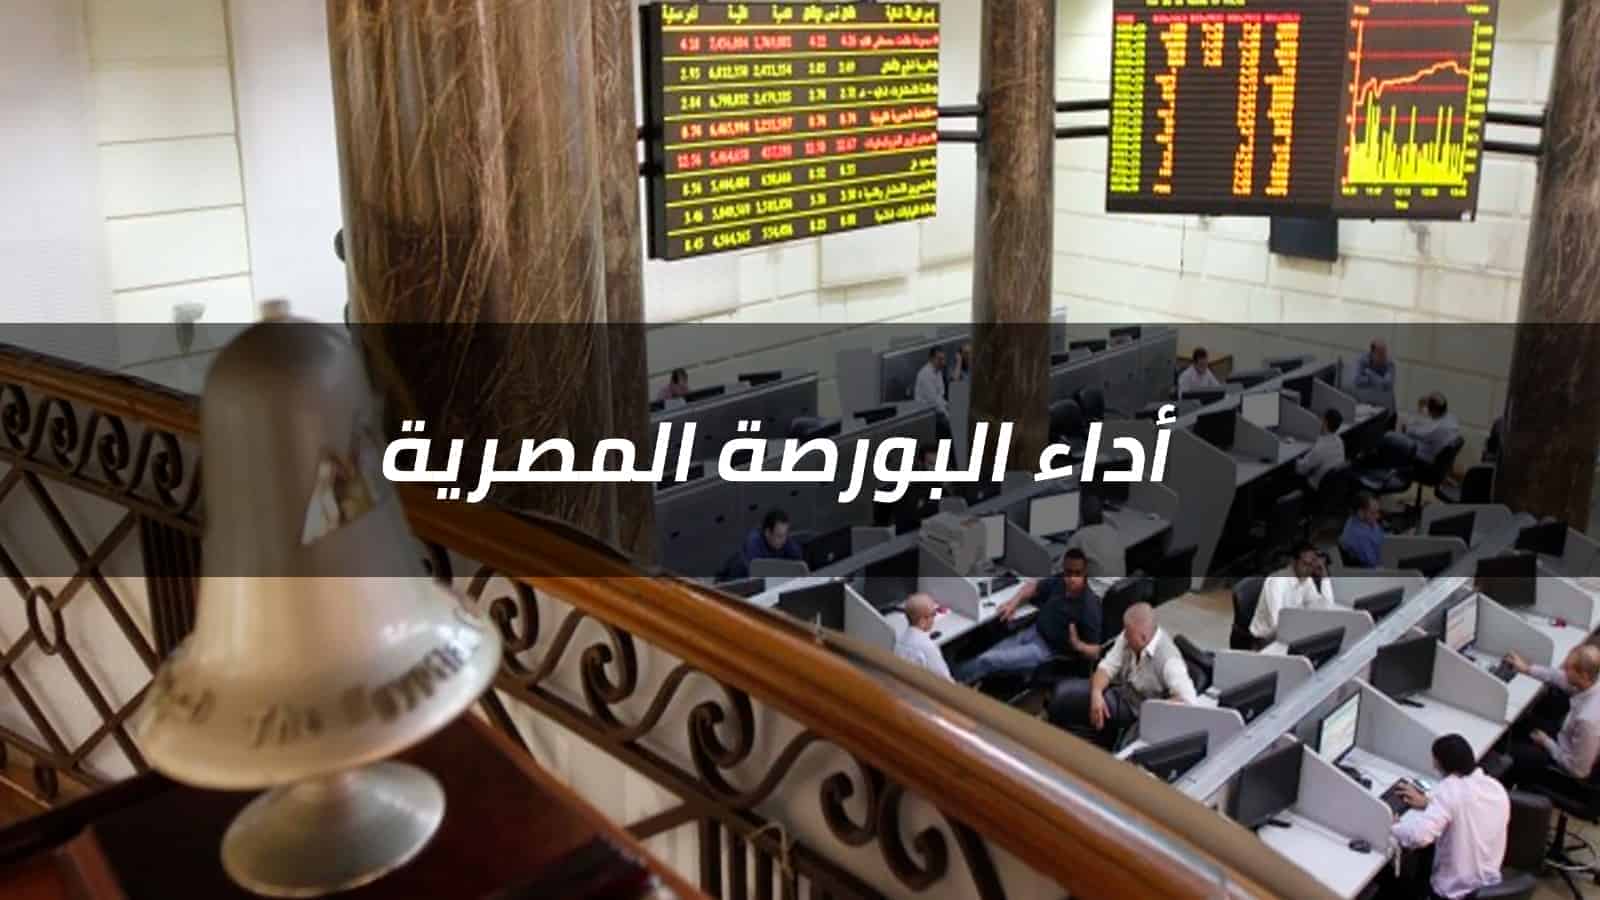 تلون مؤشرات السوق بالأحمر بنهاية تعاملات الأربعاء تحت ضغط مبيعات المصريين